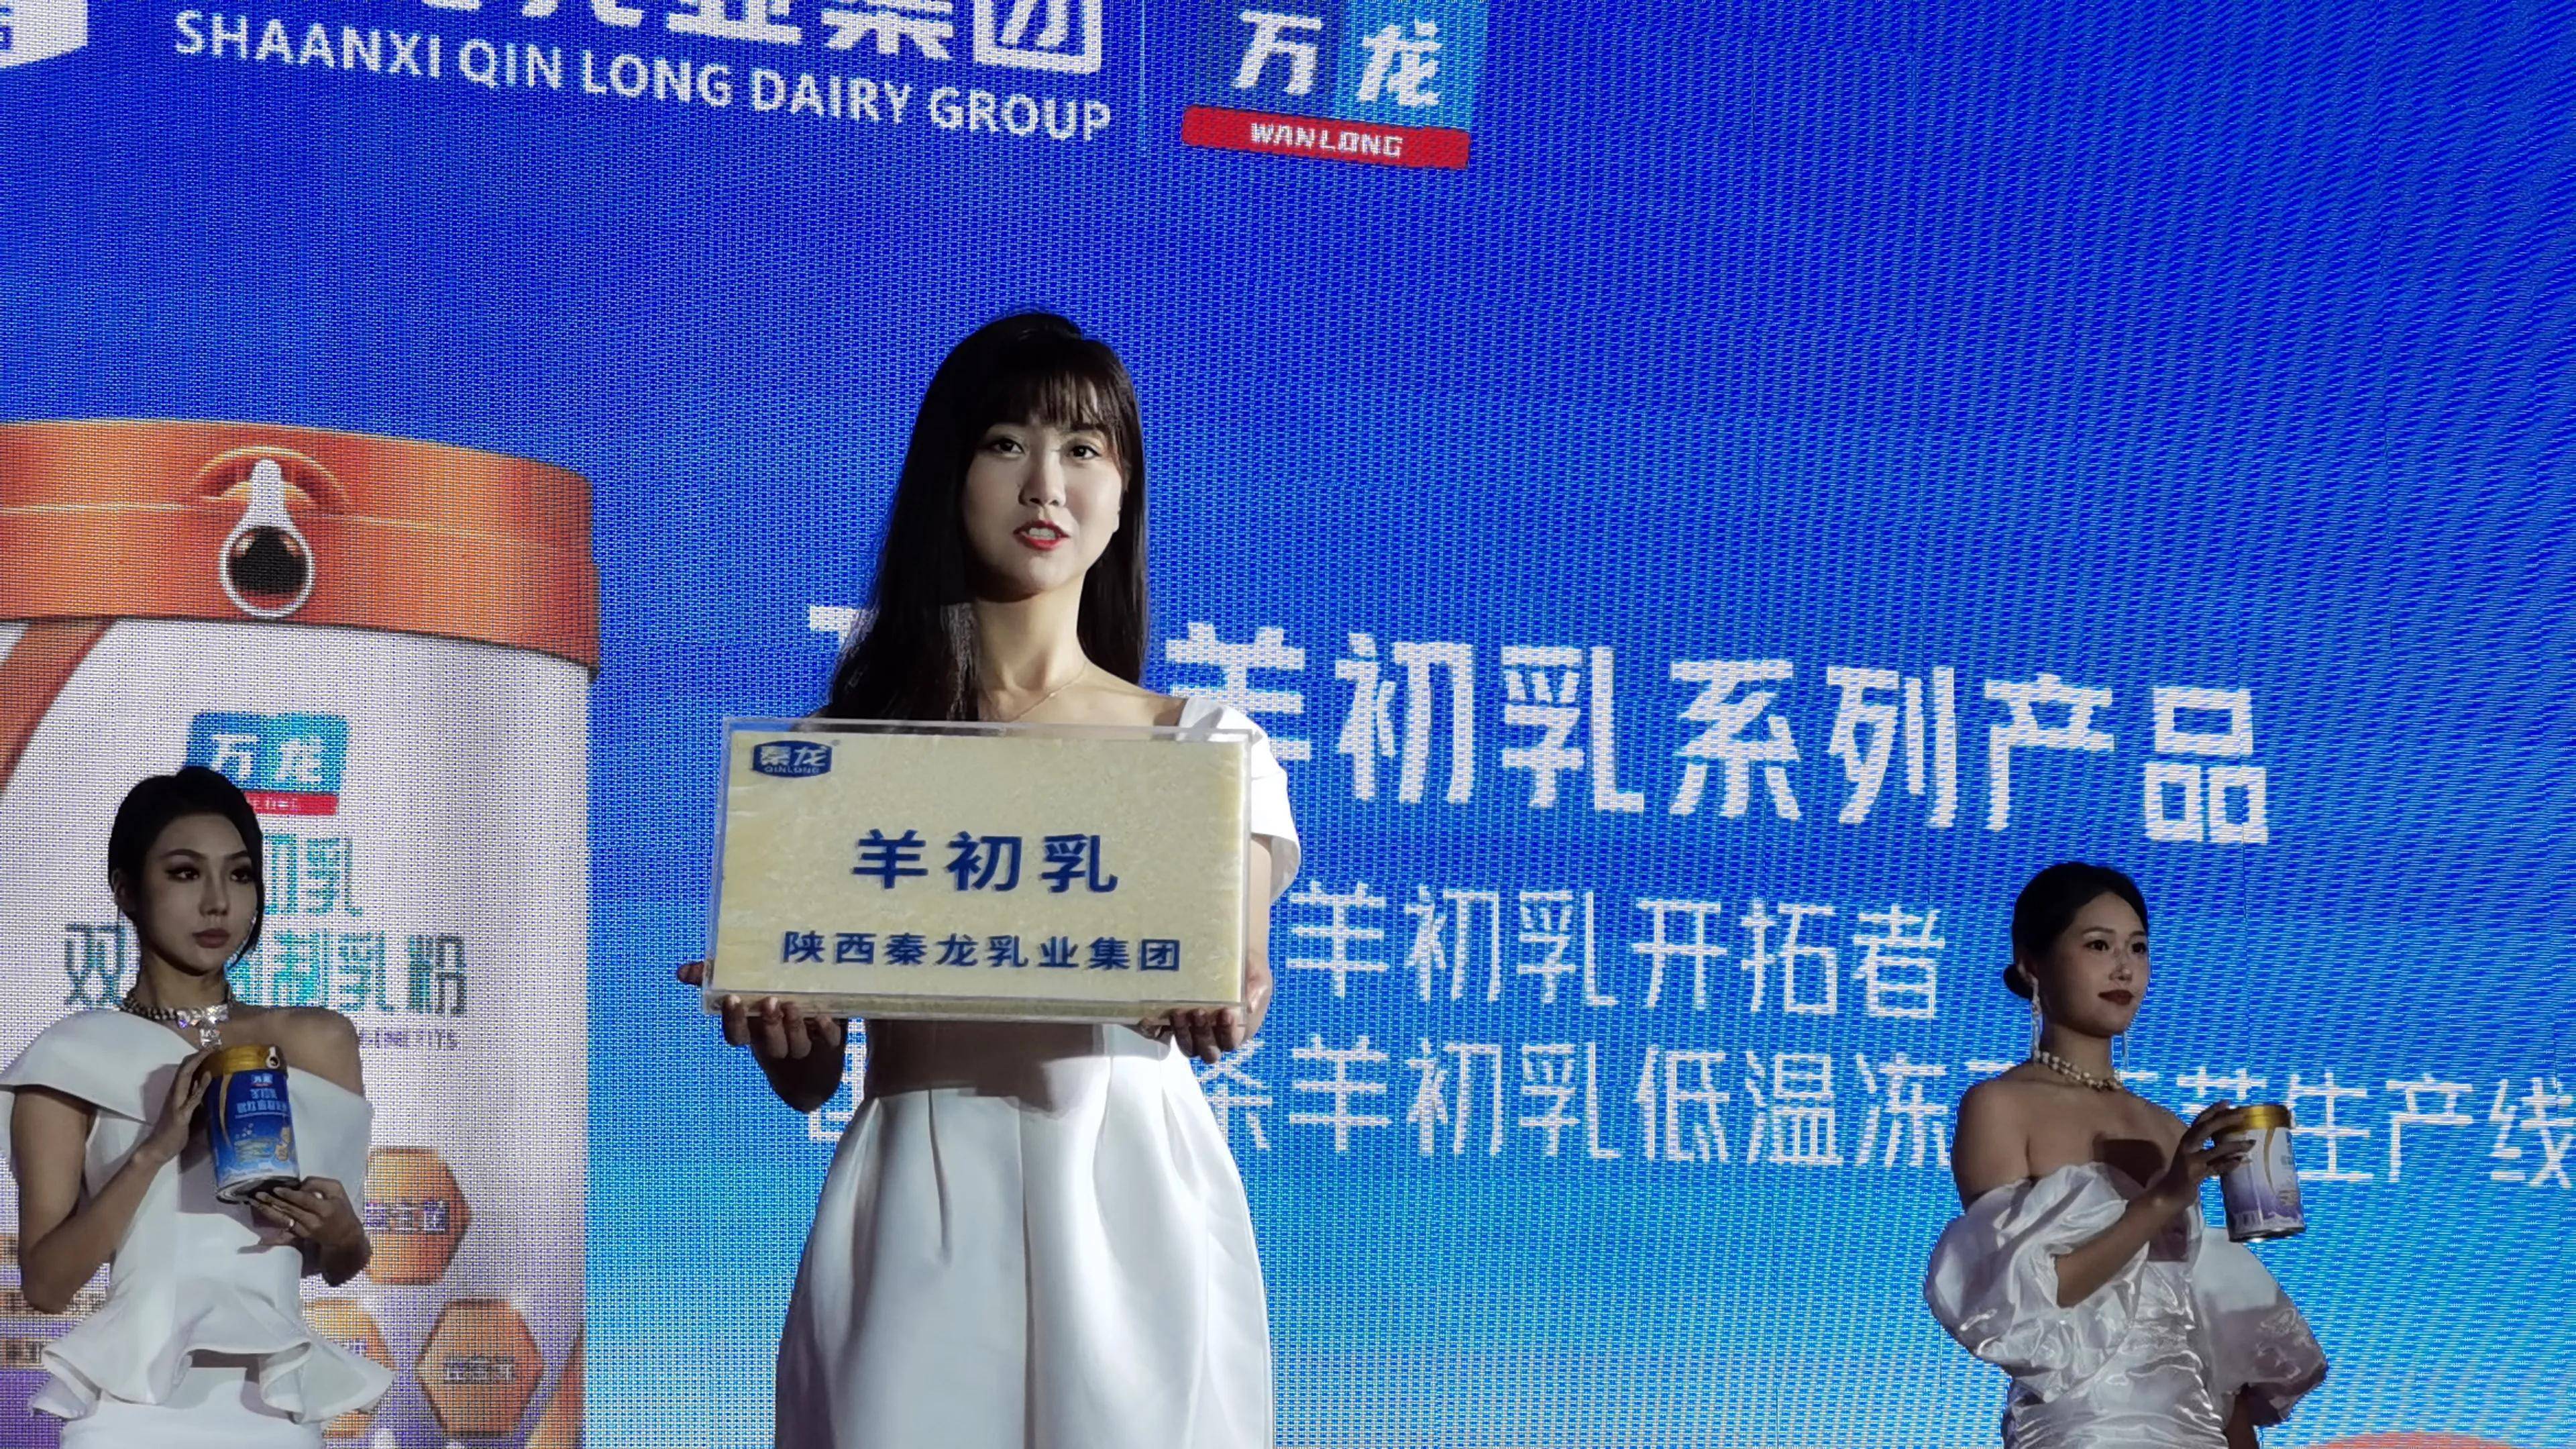 中国羊初乳产业标准化发展高峰论坛在南京举行 (图1)